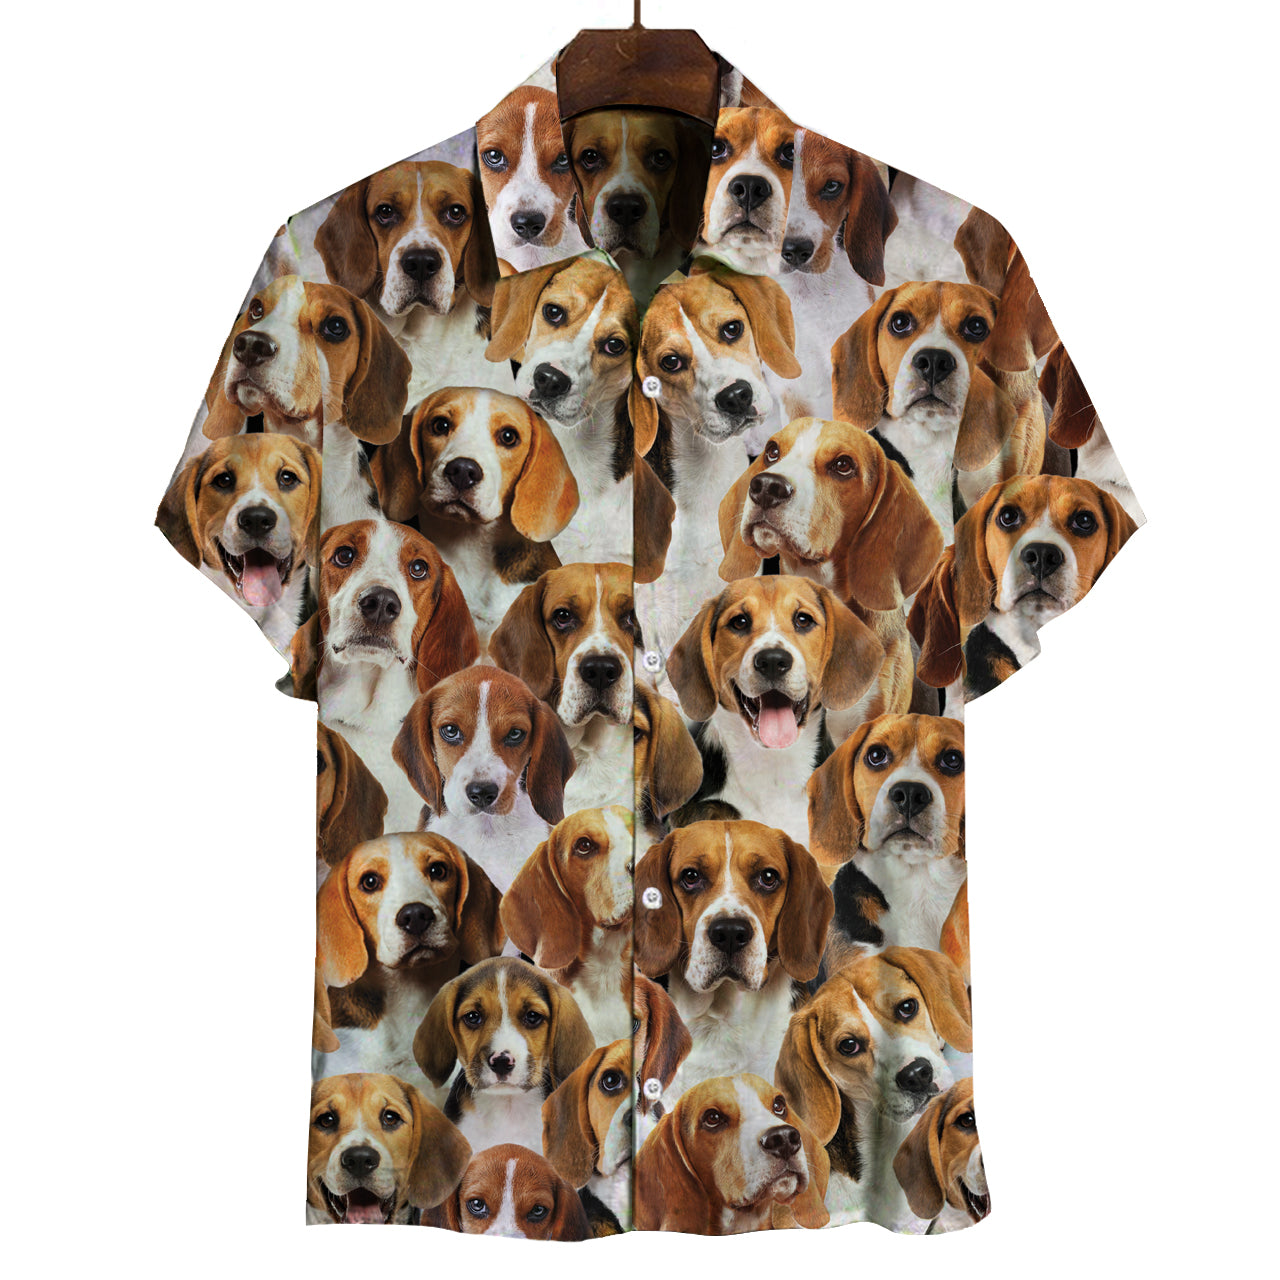 Du wirst einen Haufen Beagles haben - Shirt V1